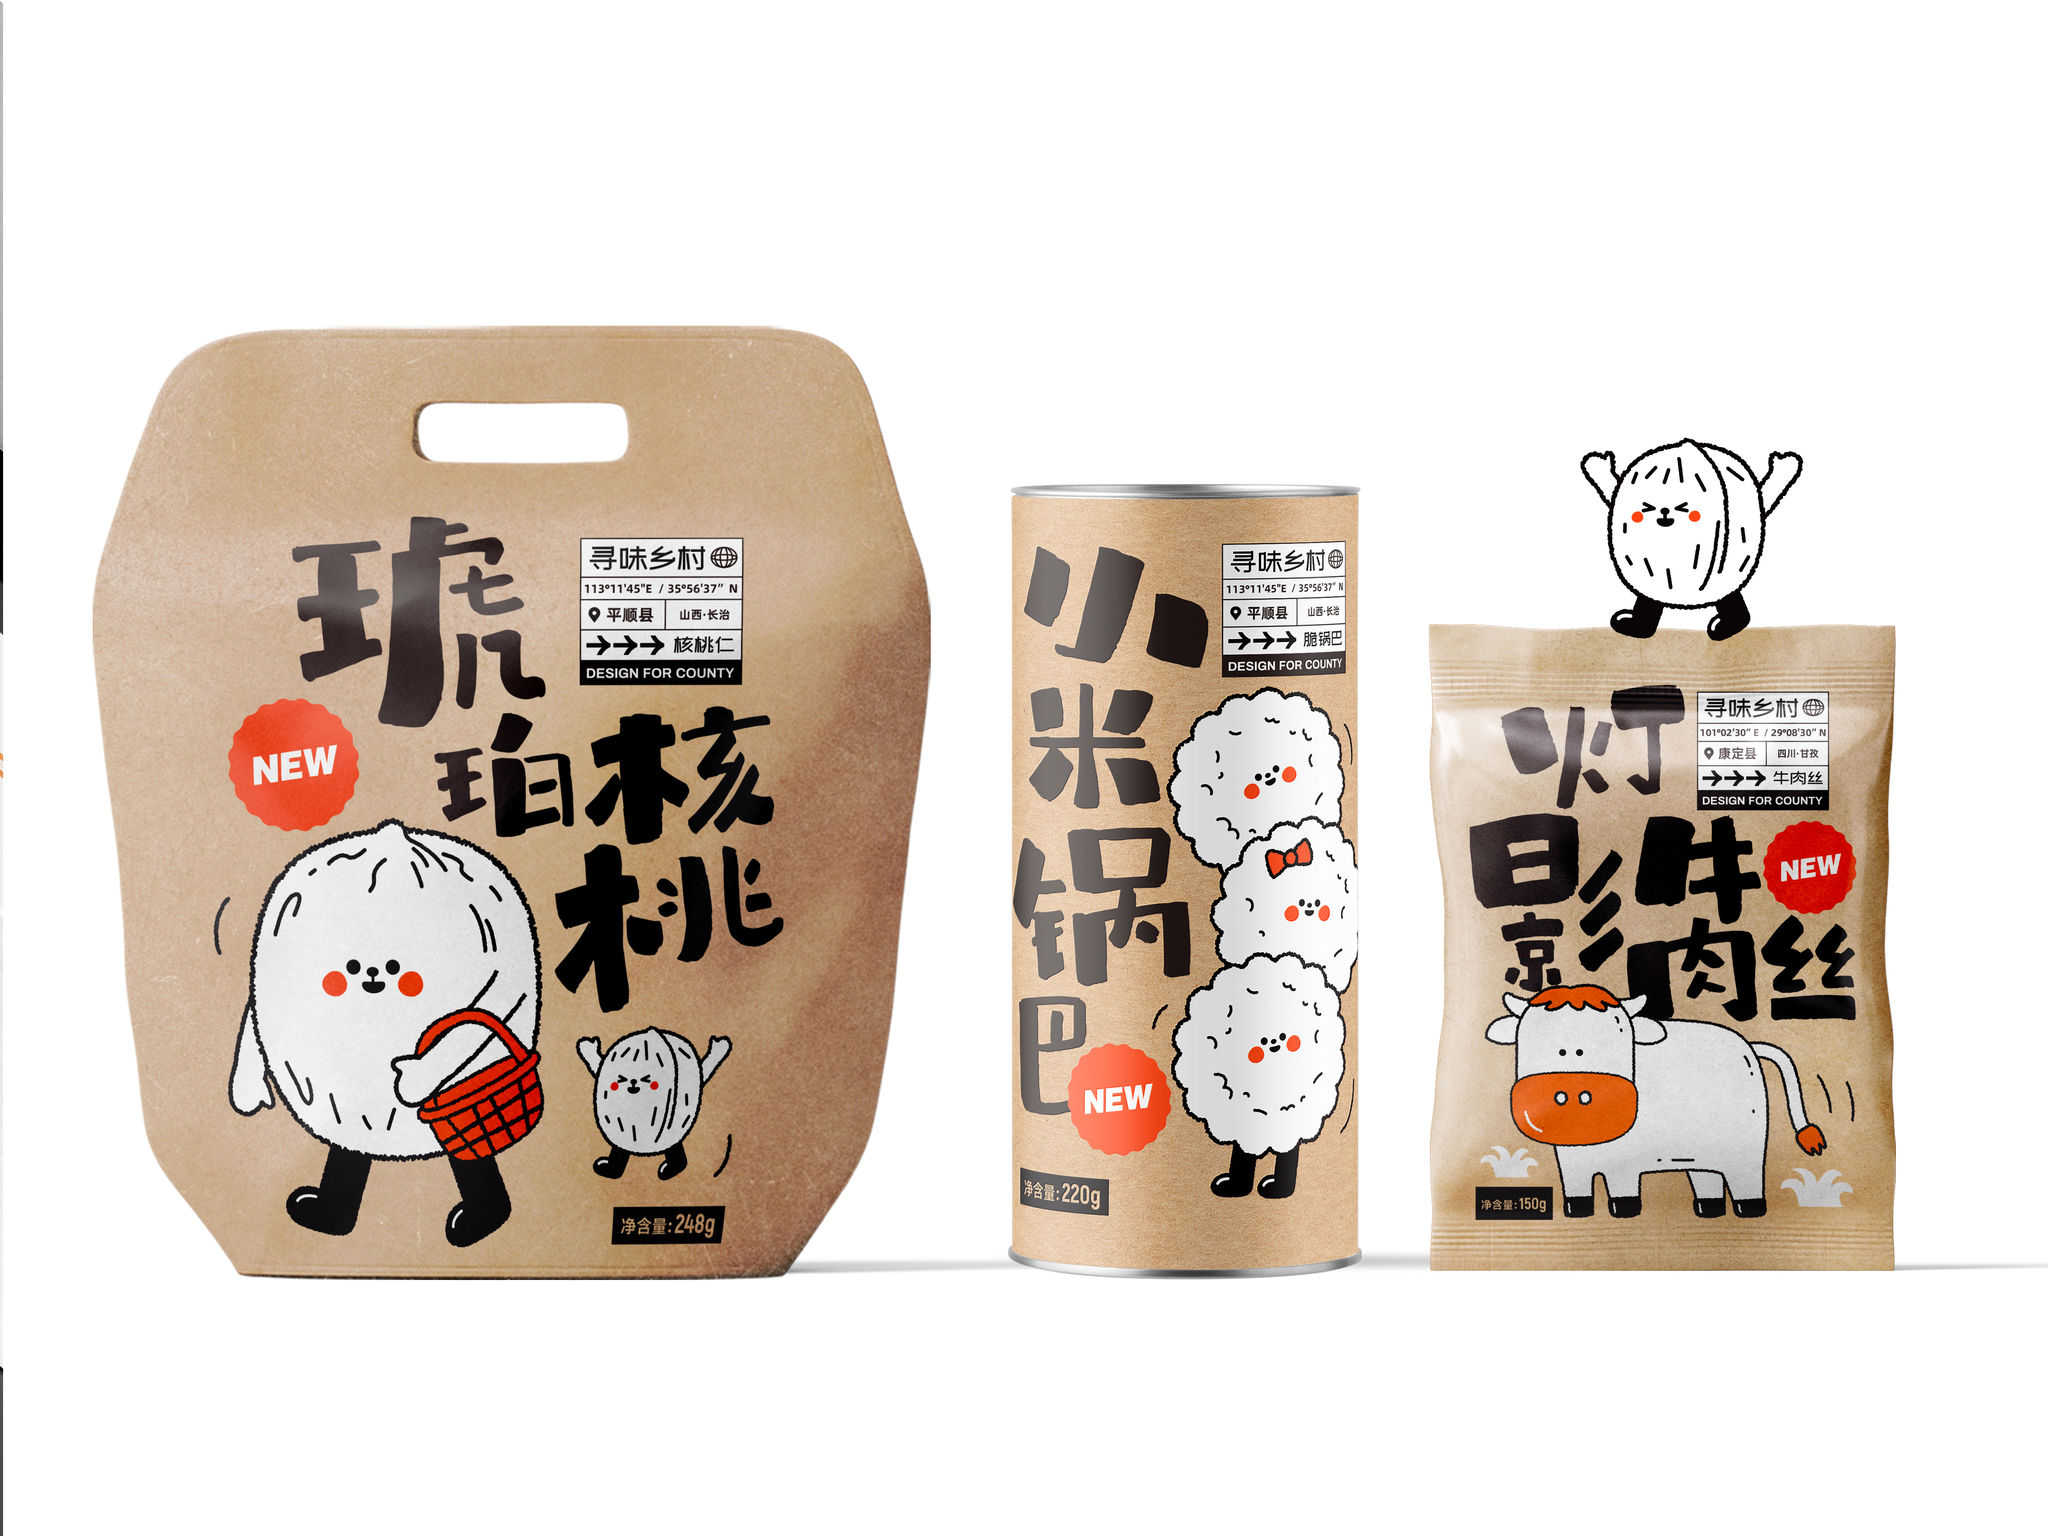 Xunwei County Packaging Series